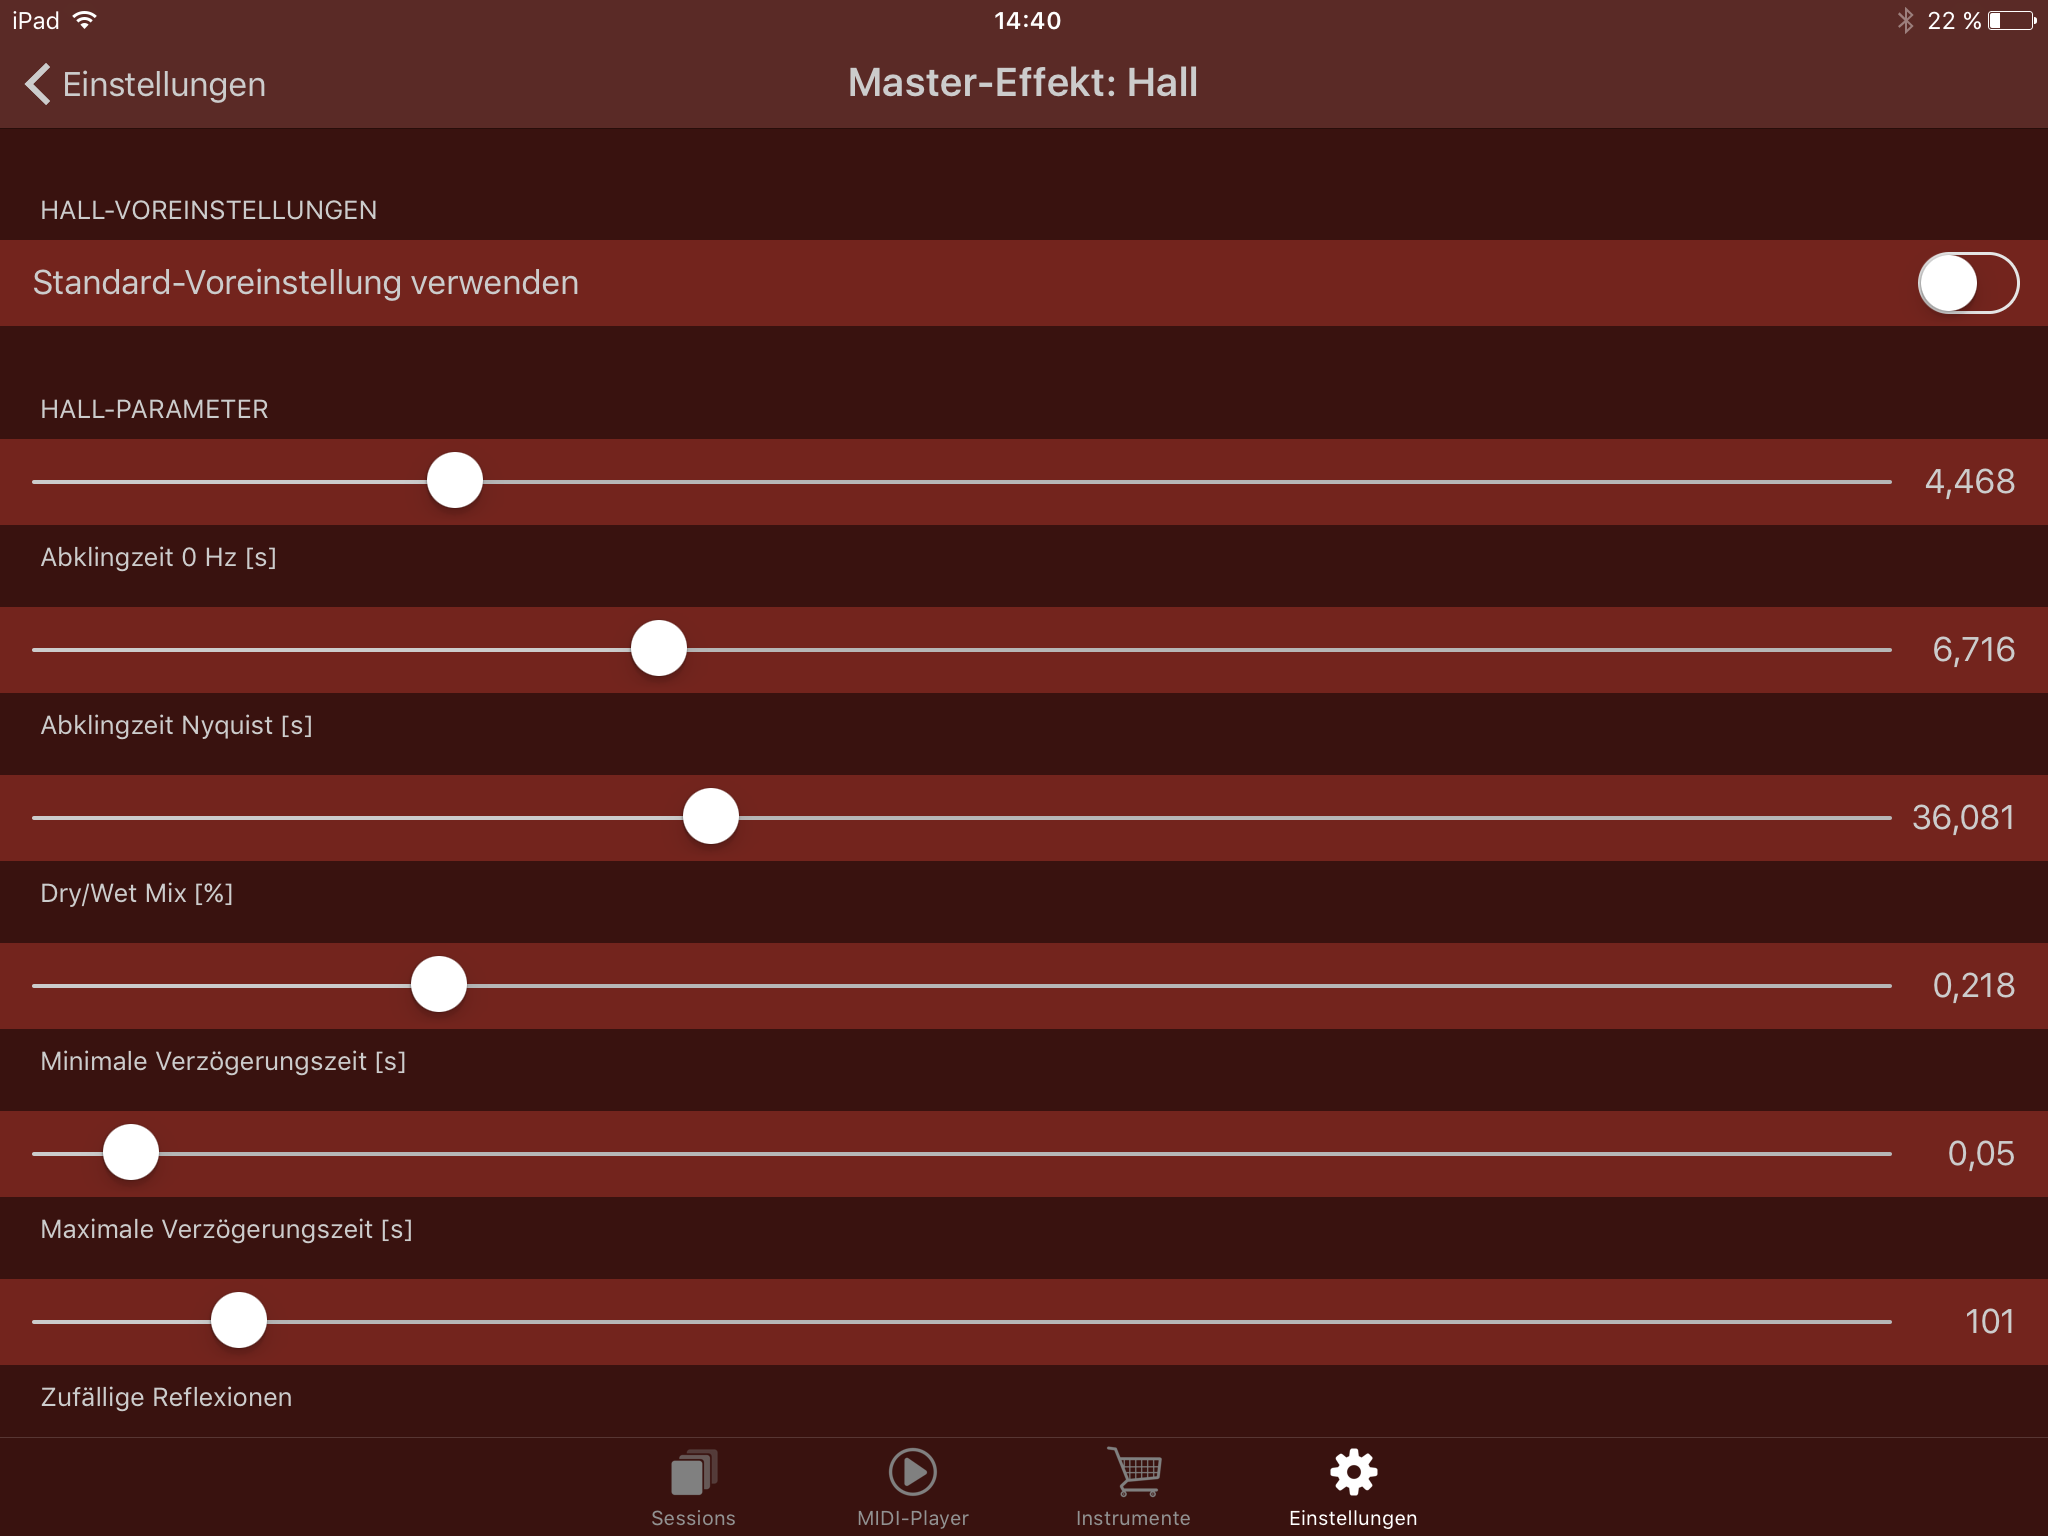 Master-Effekt: Hall Turbosounds-App Einstellung